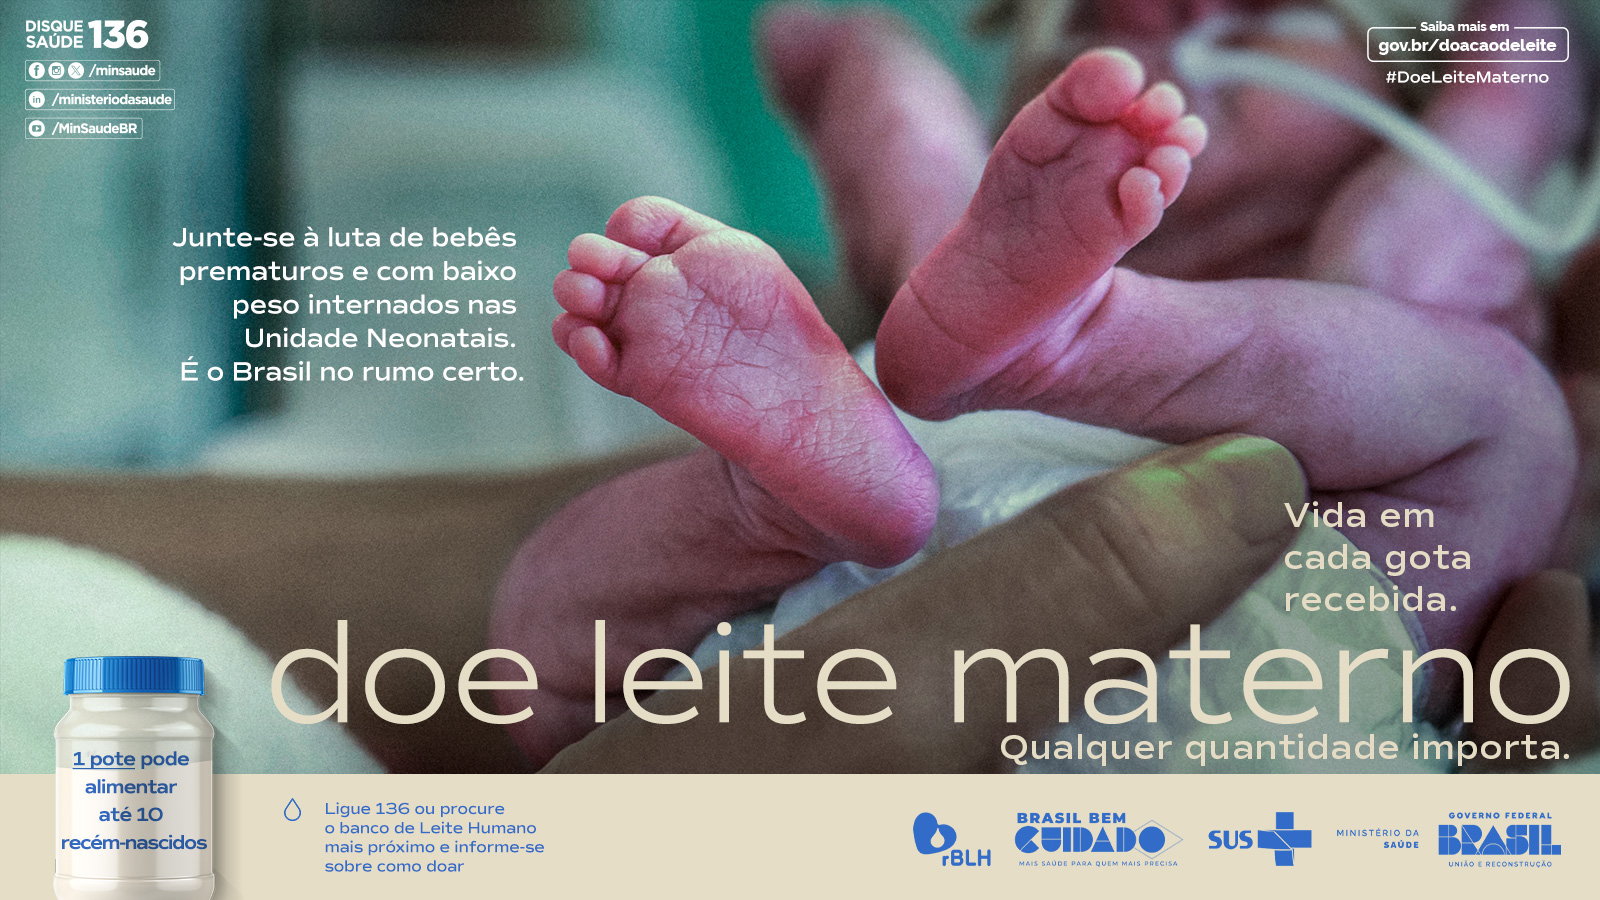 Tela Login - Campanha Nacional de Doação de Leite - 1600x900px .jpg